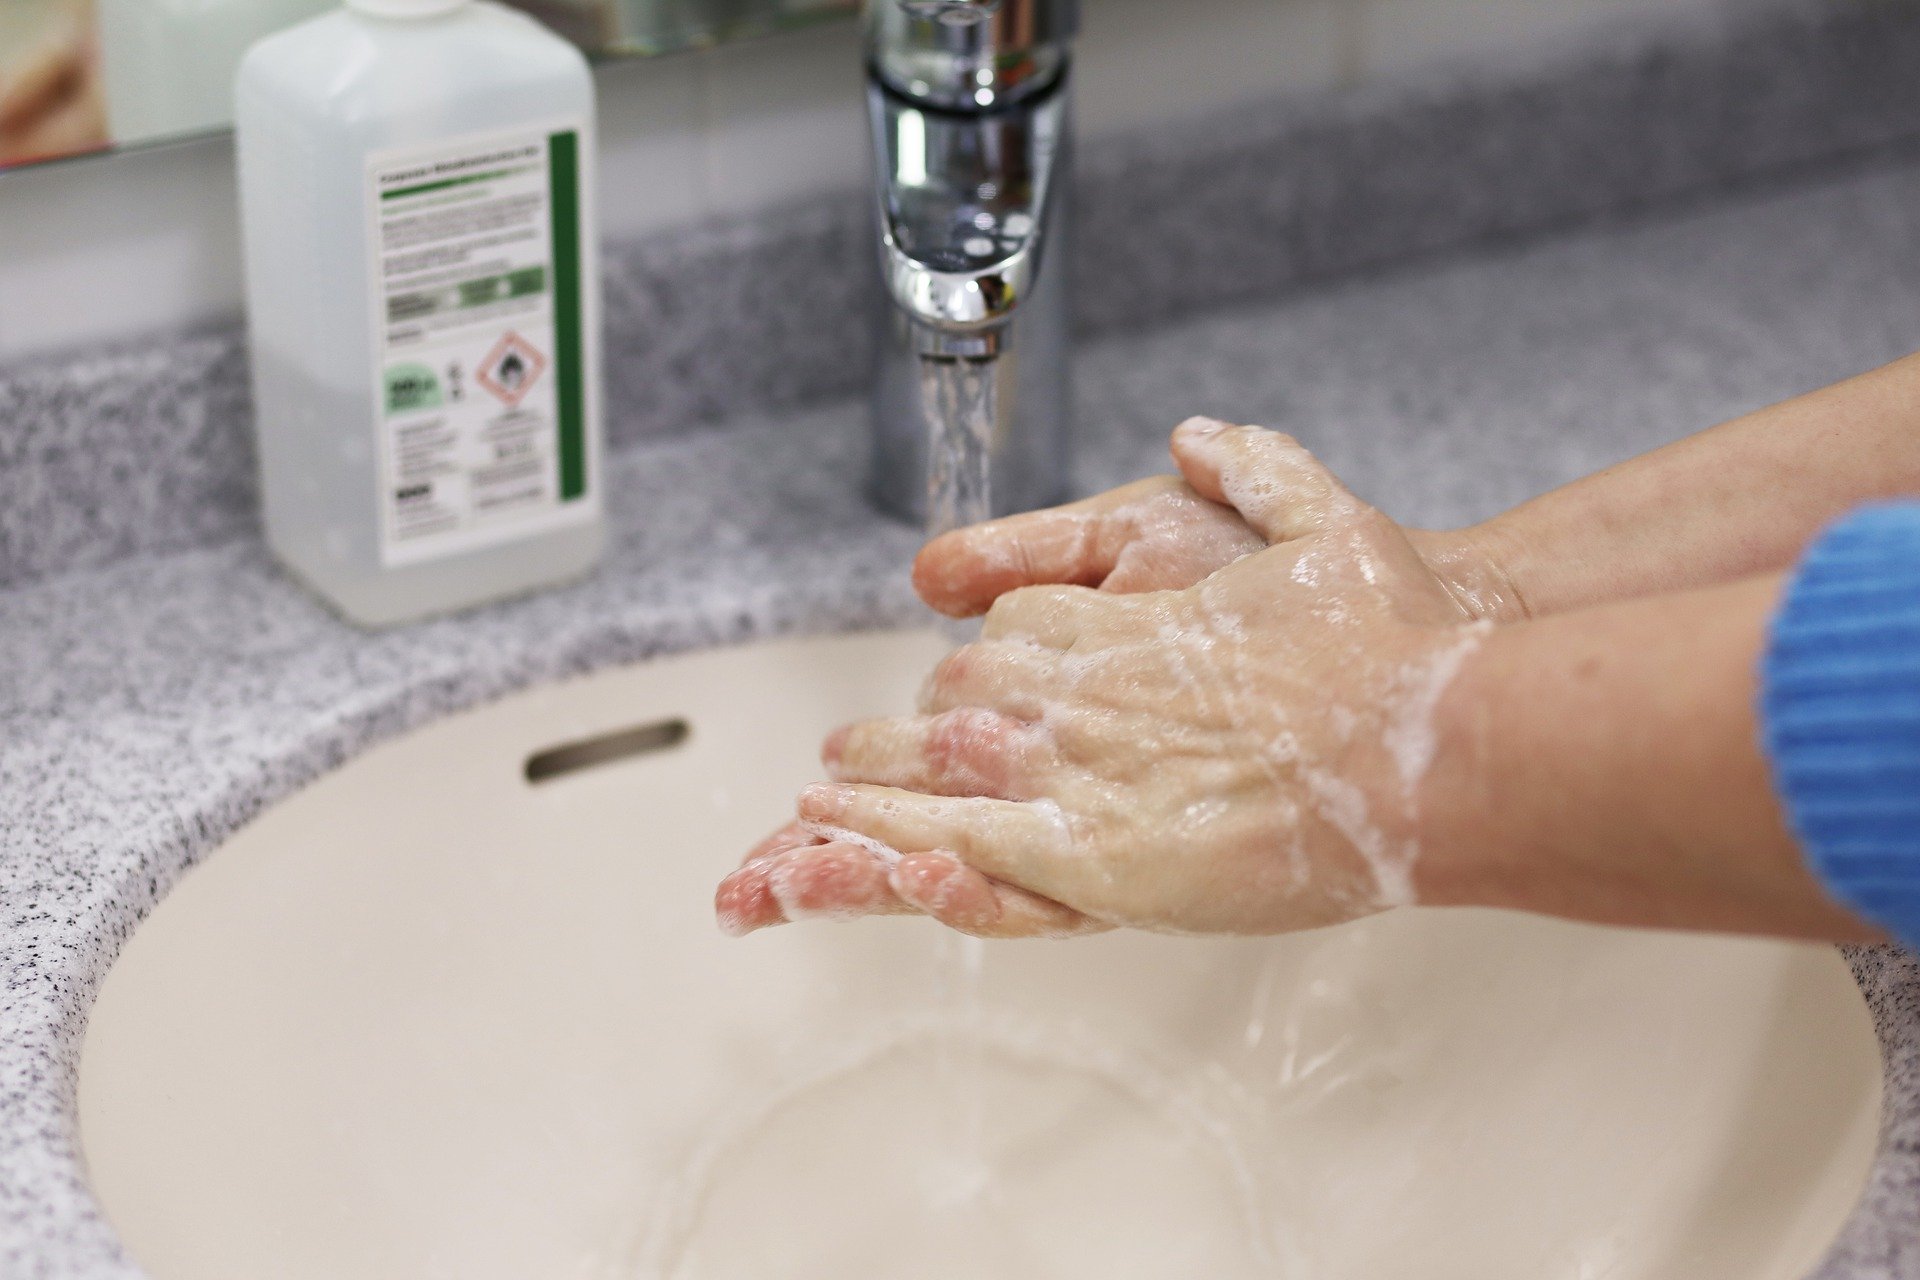 ignaz washing hand